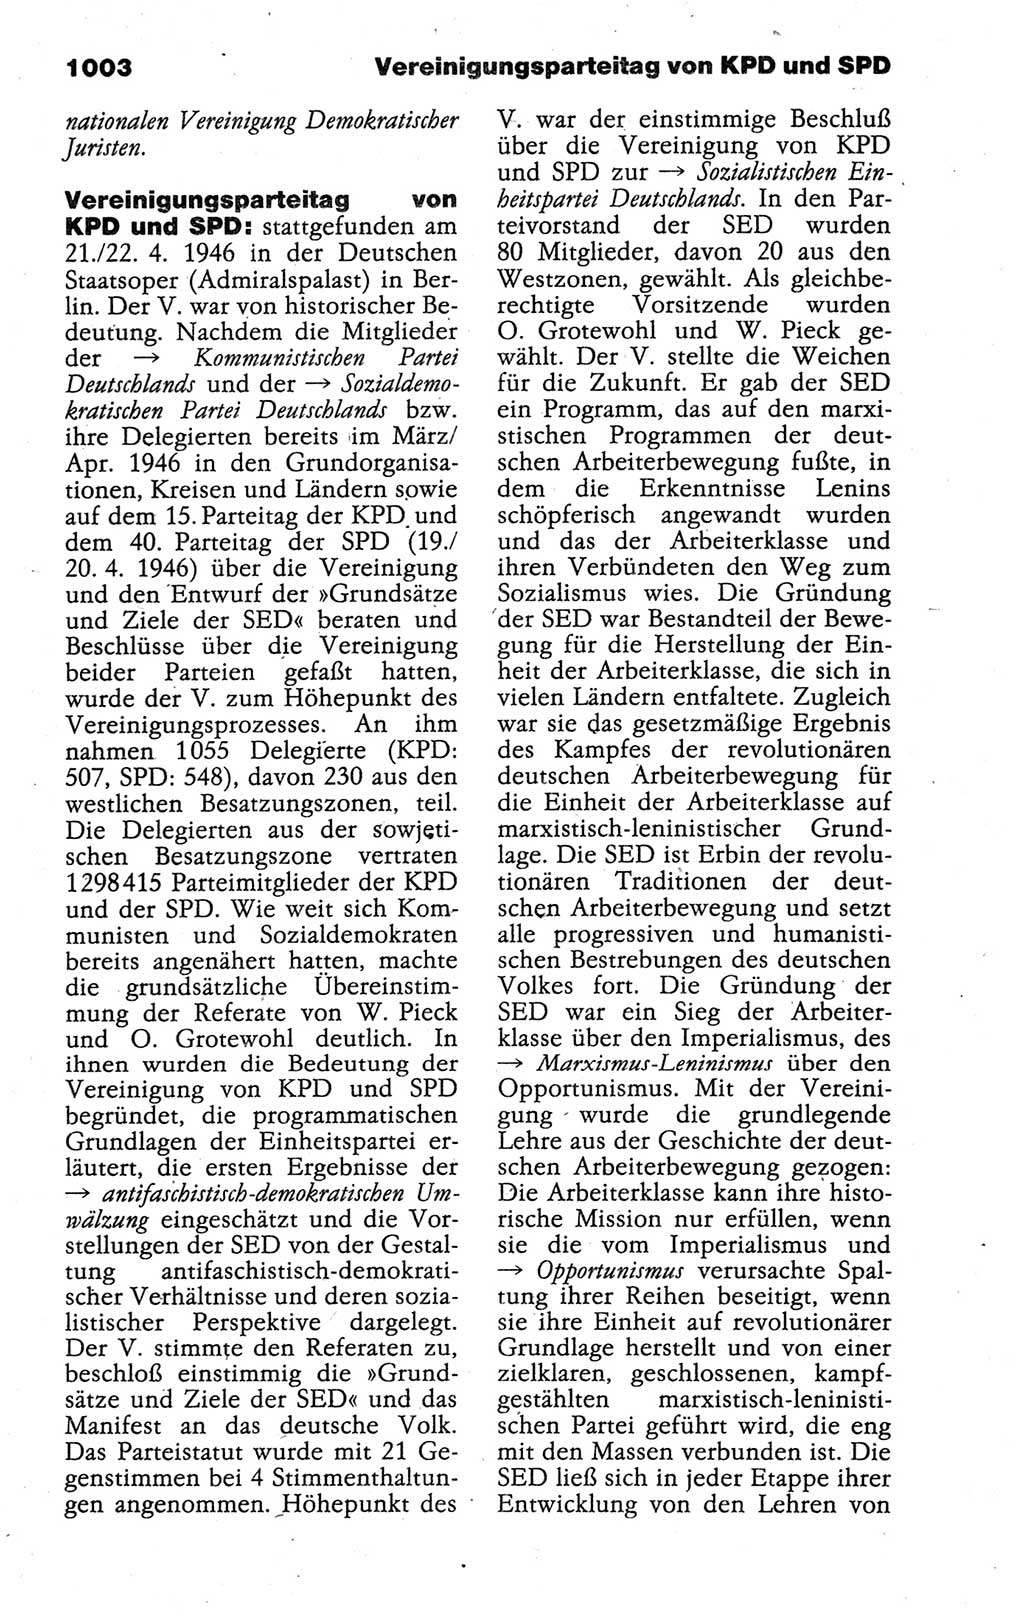 Kleines politisches Wörterbuch [Deutsche Demokratische Republik (DDR)] 1988, Seite 1003 (Kl. pol. Wb. DDR 1988, S. 1003)